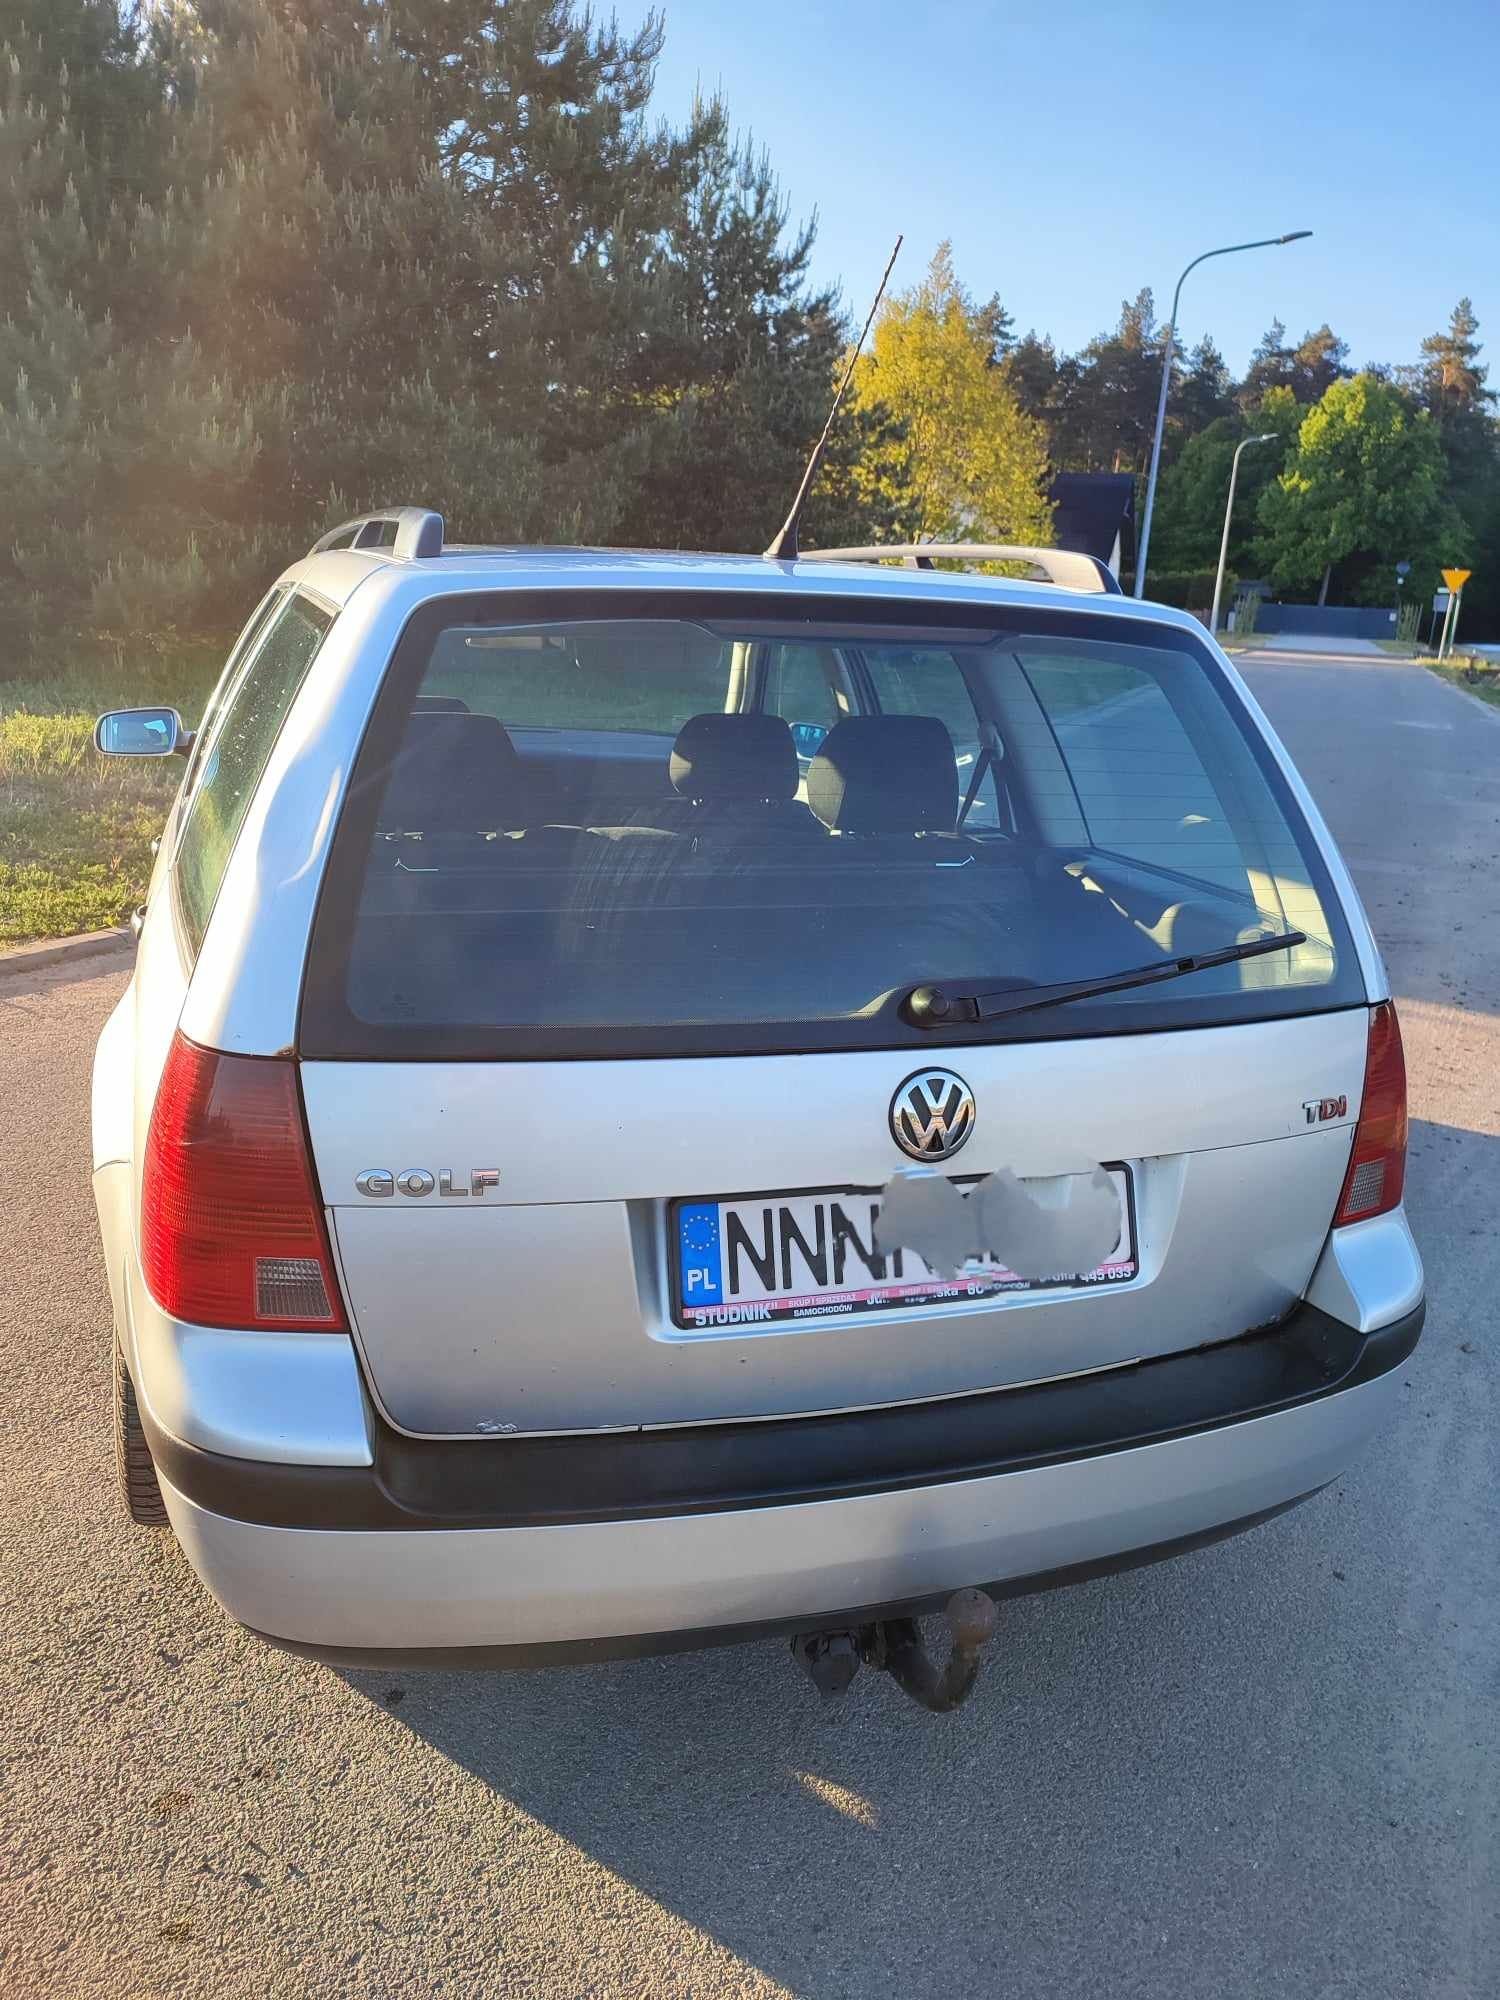 Volkswagen Golf 2001